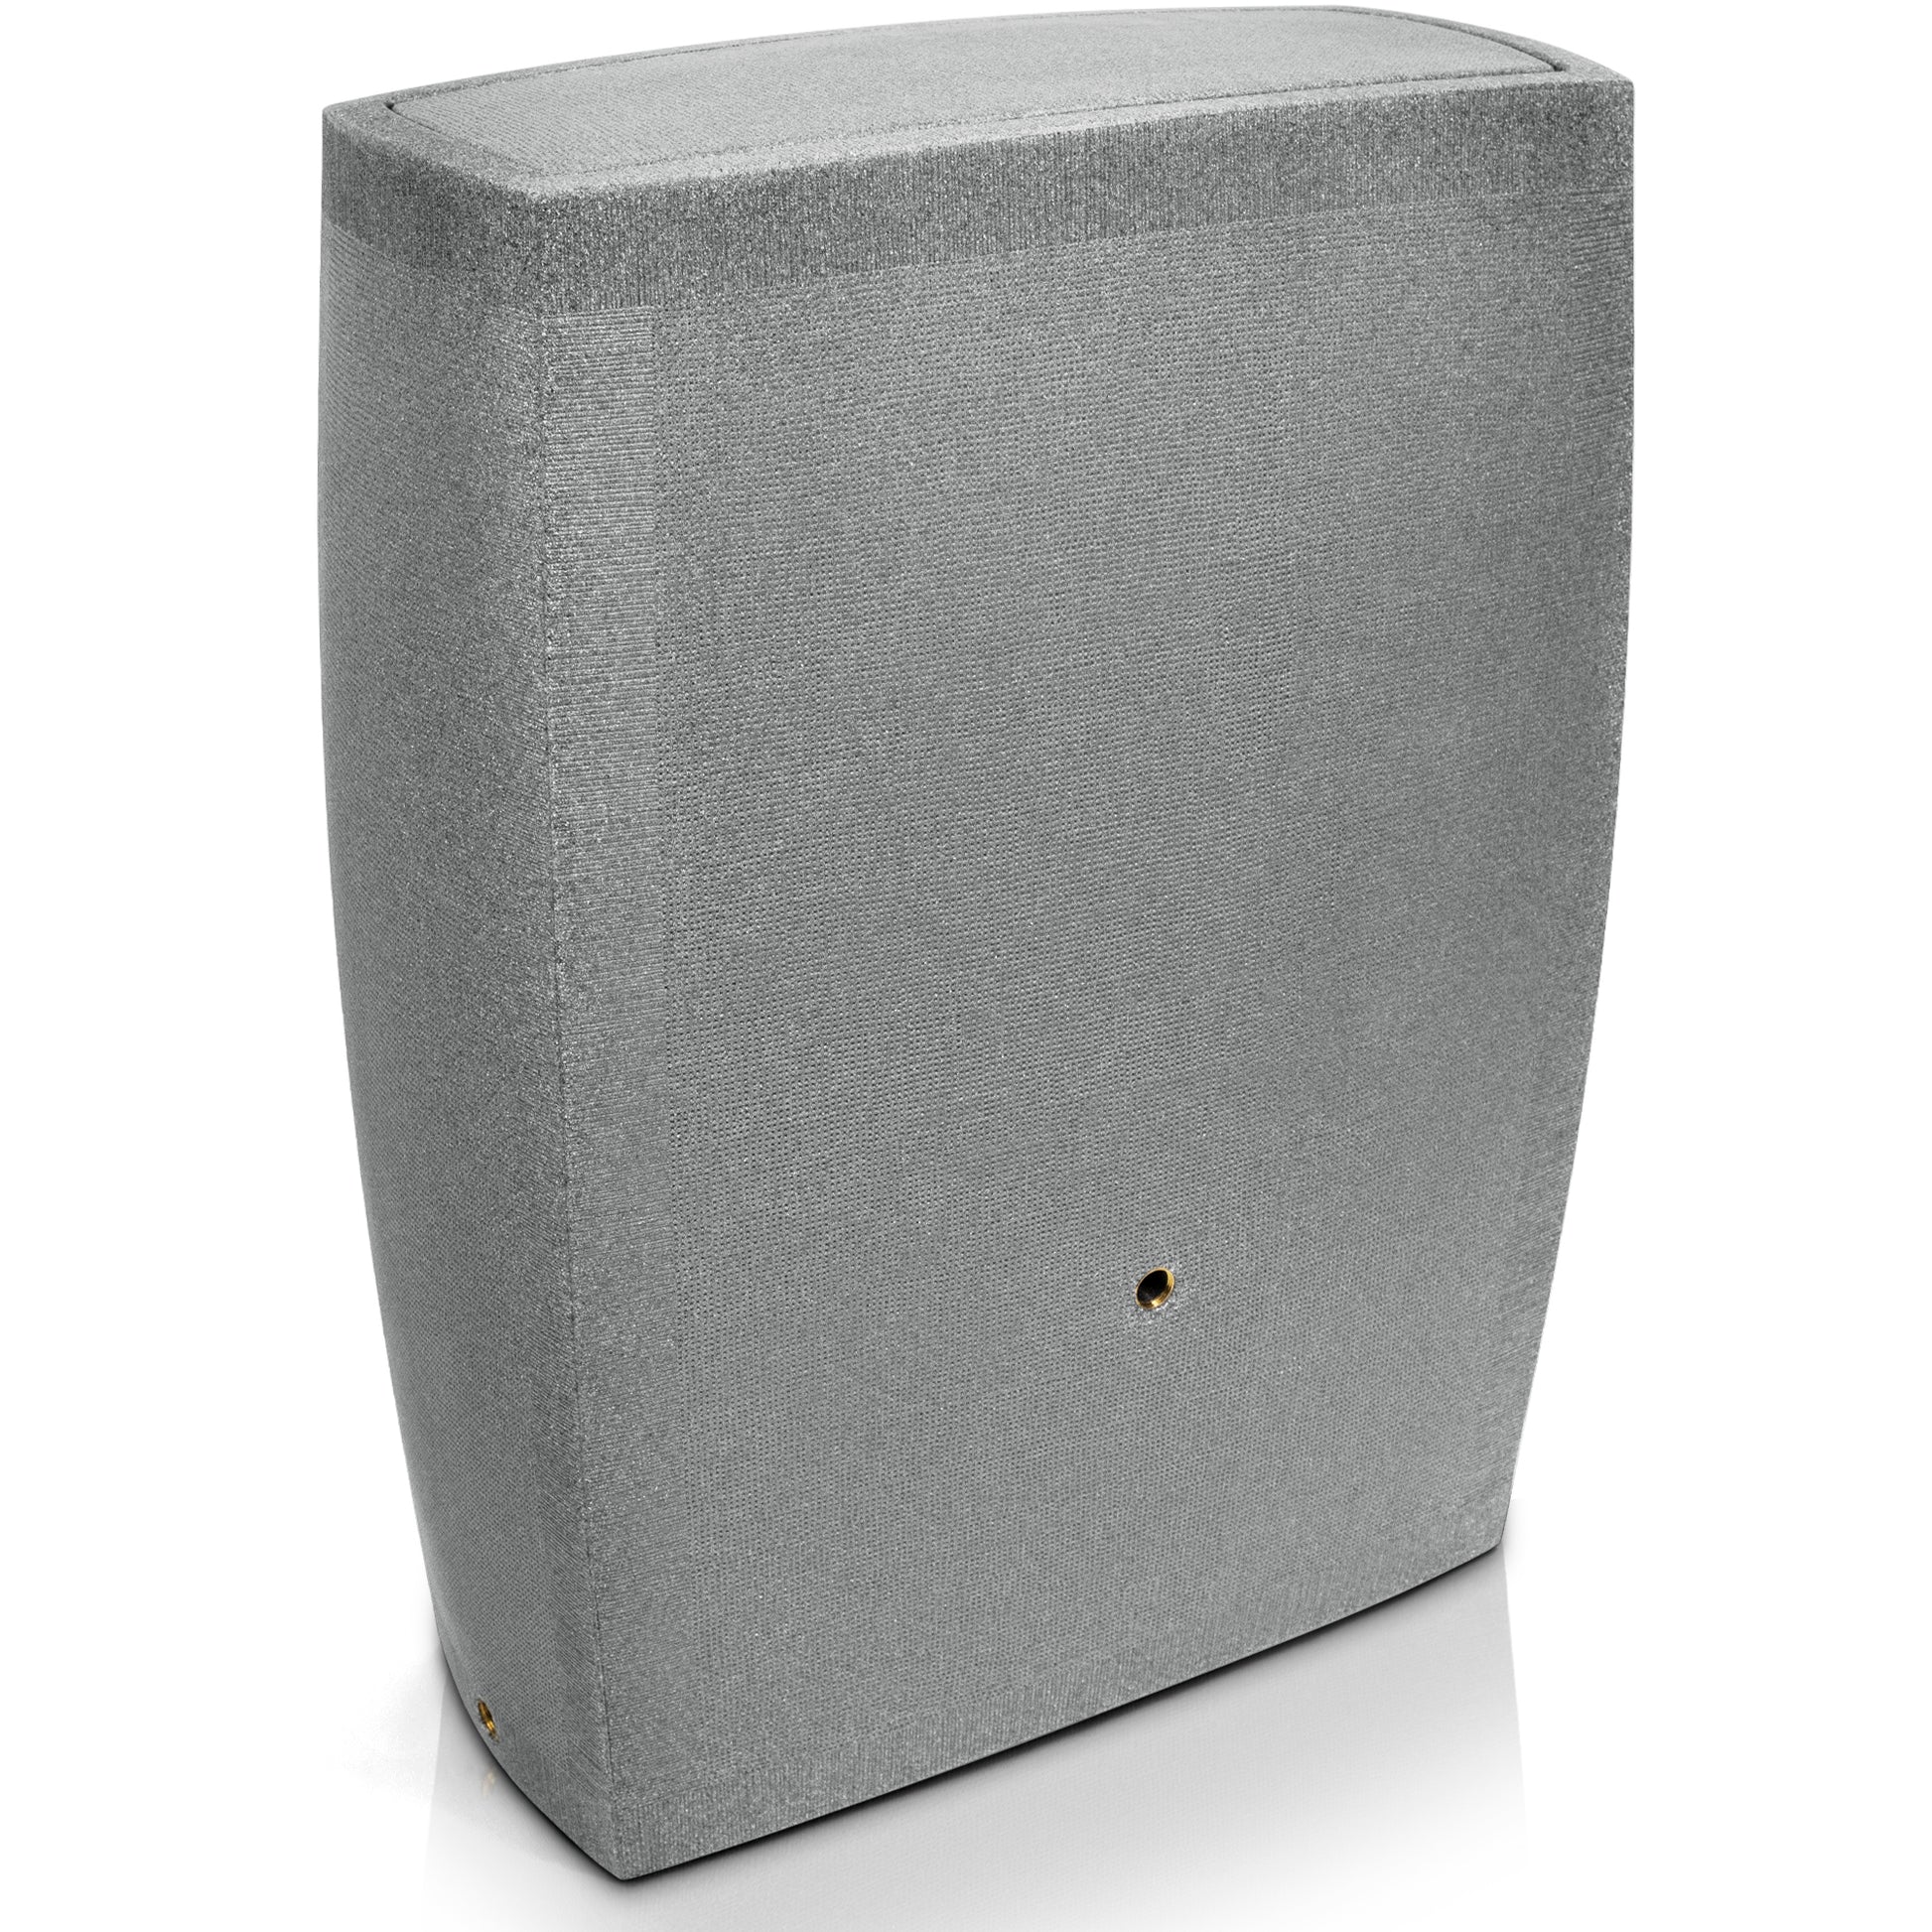 Eine graue YourCasa Regentonne 275 Liter [SquareLux Rain] Eckig und Schmal Lautsprecherbox auf einer weißen Oberfläche.